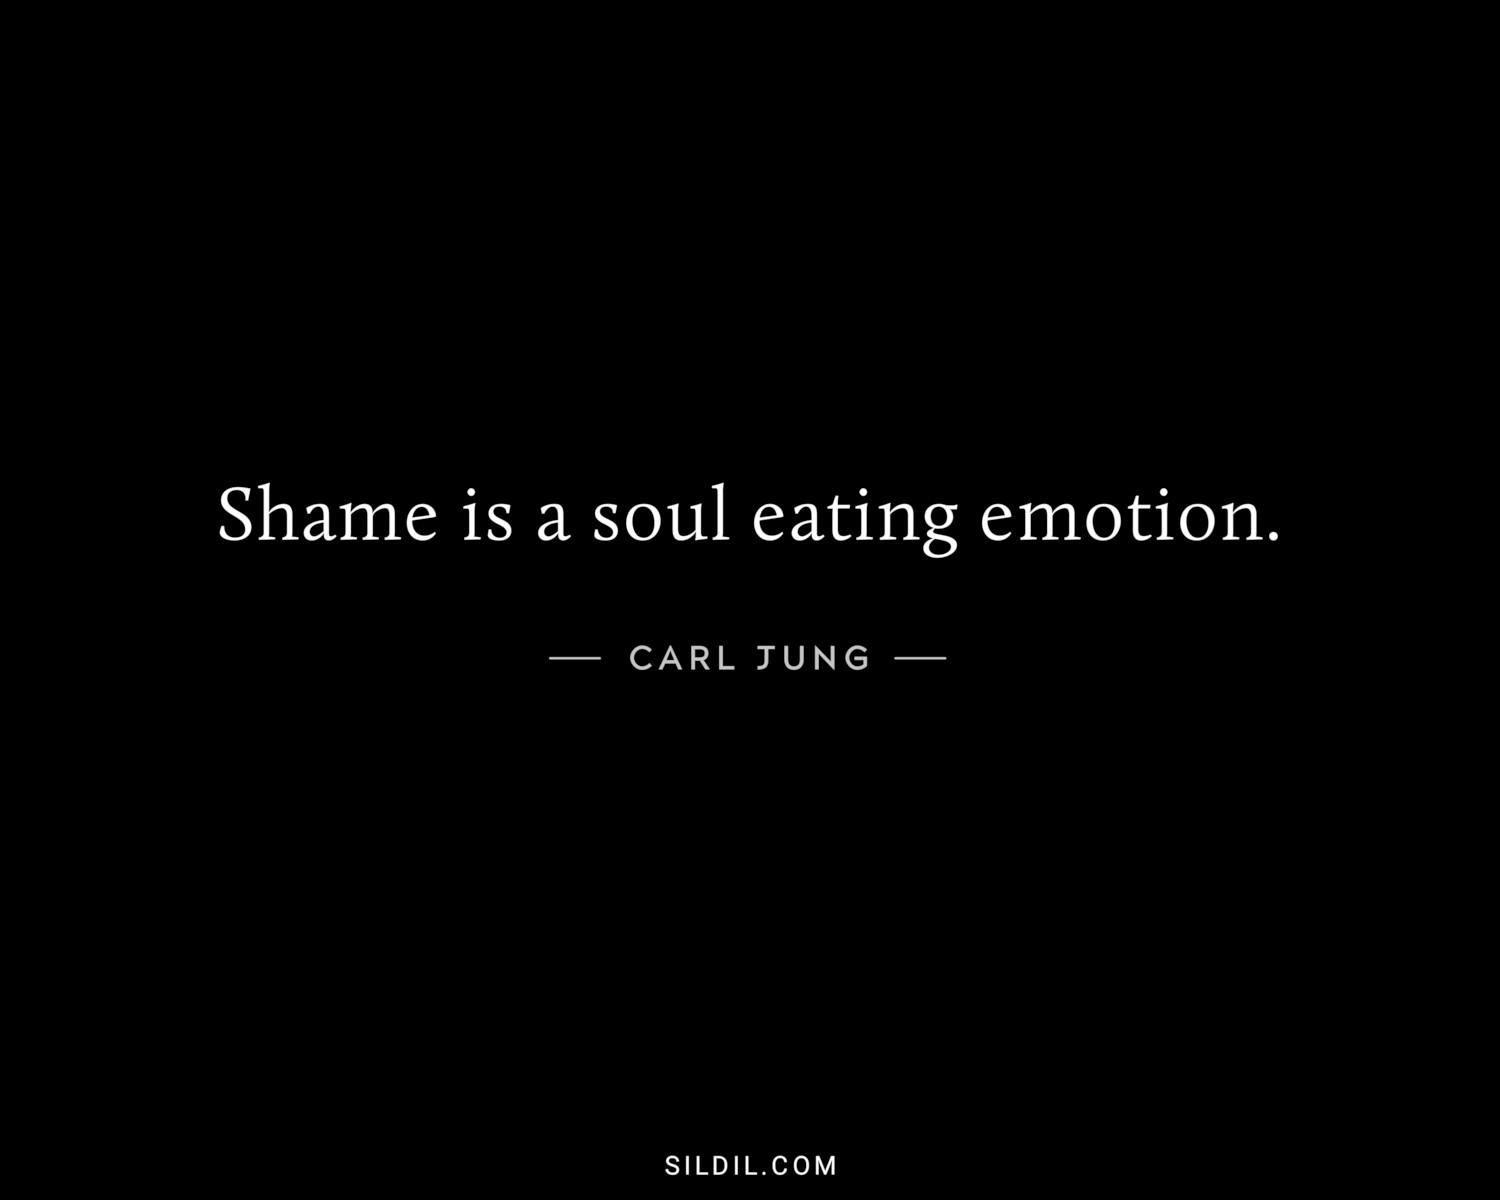 Shame is a soul eating emotion.